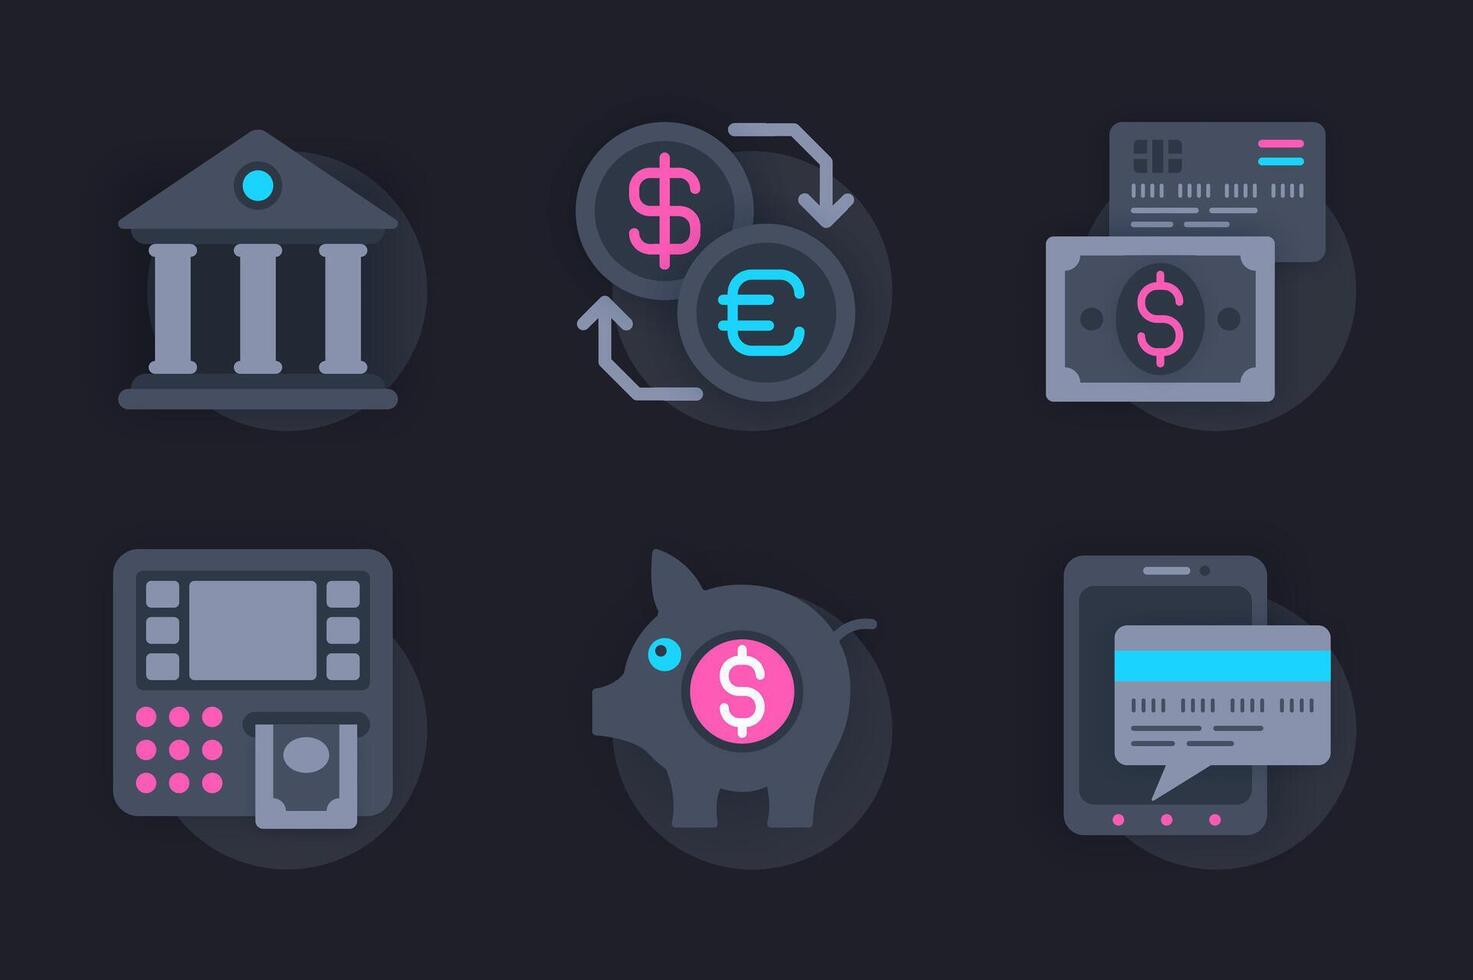 finansiera webb begrepp av 3d papper ikoner uppsättning. packa platt piktogram av finansiell tjänster i Bank och mobil appar, valuta utbyta, kontanter överföra, besparingar. element för hemsida i mörk stil vektor